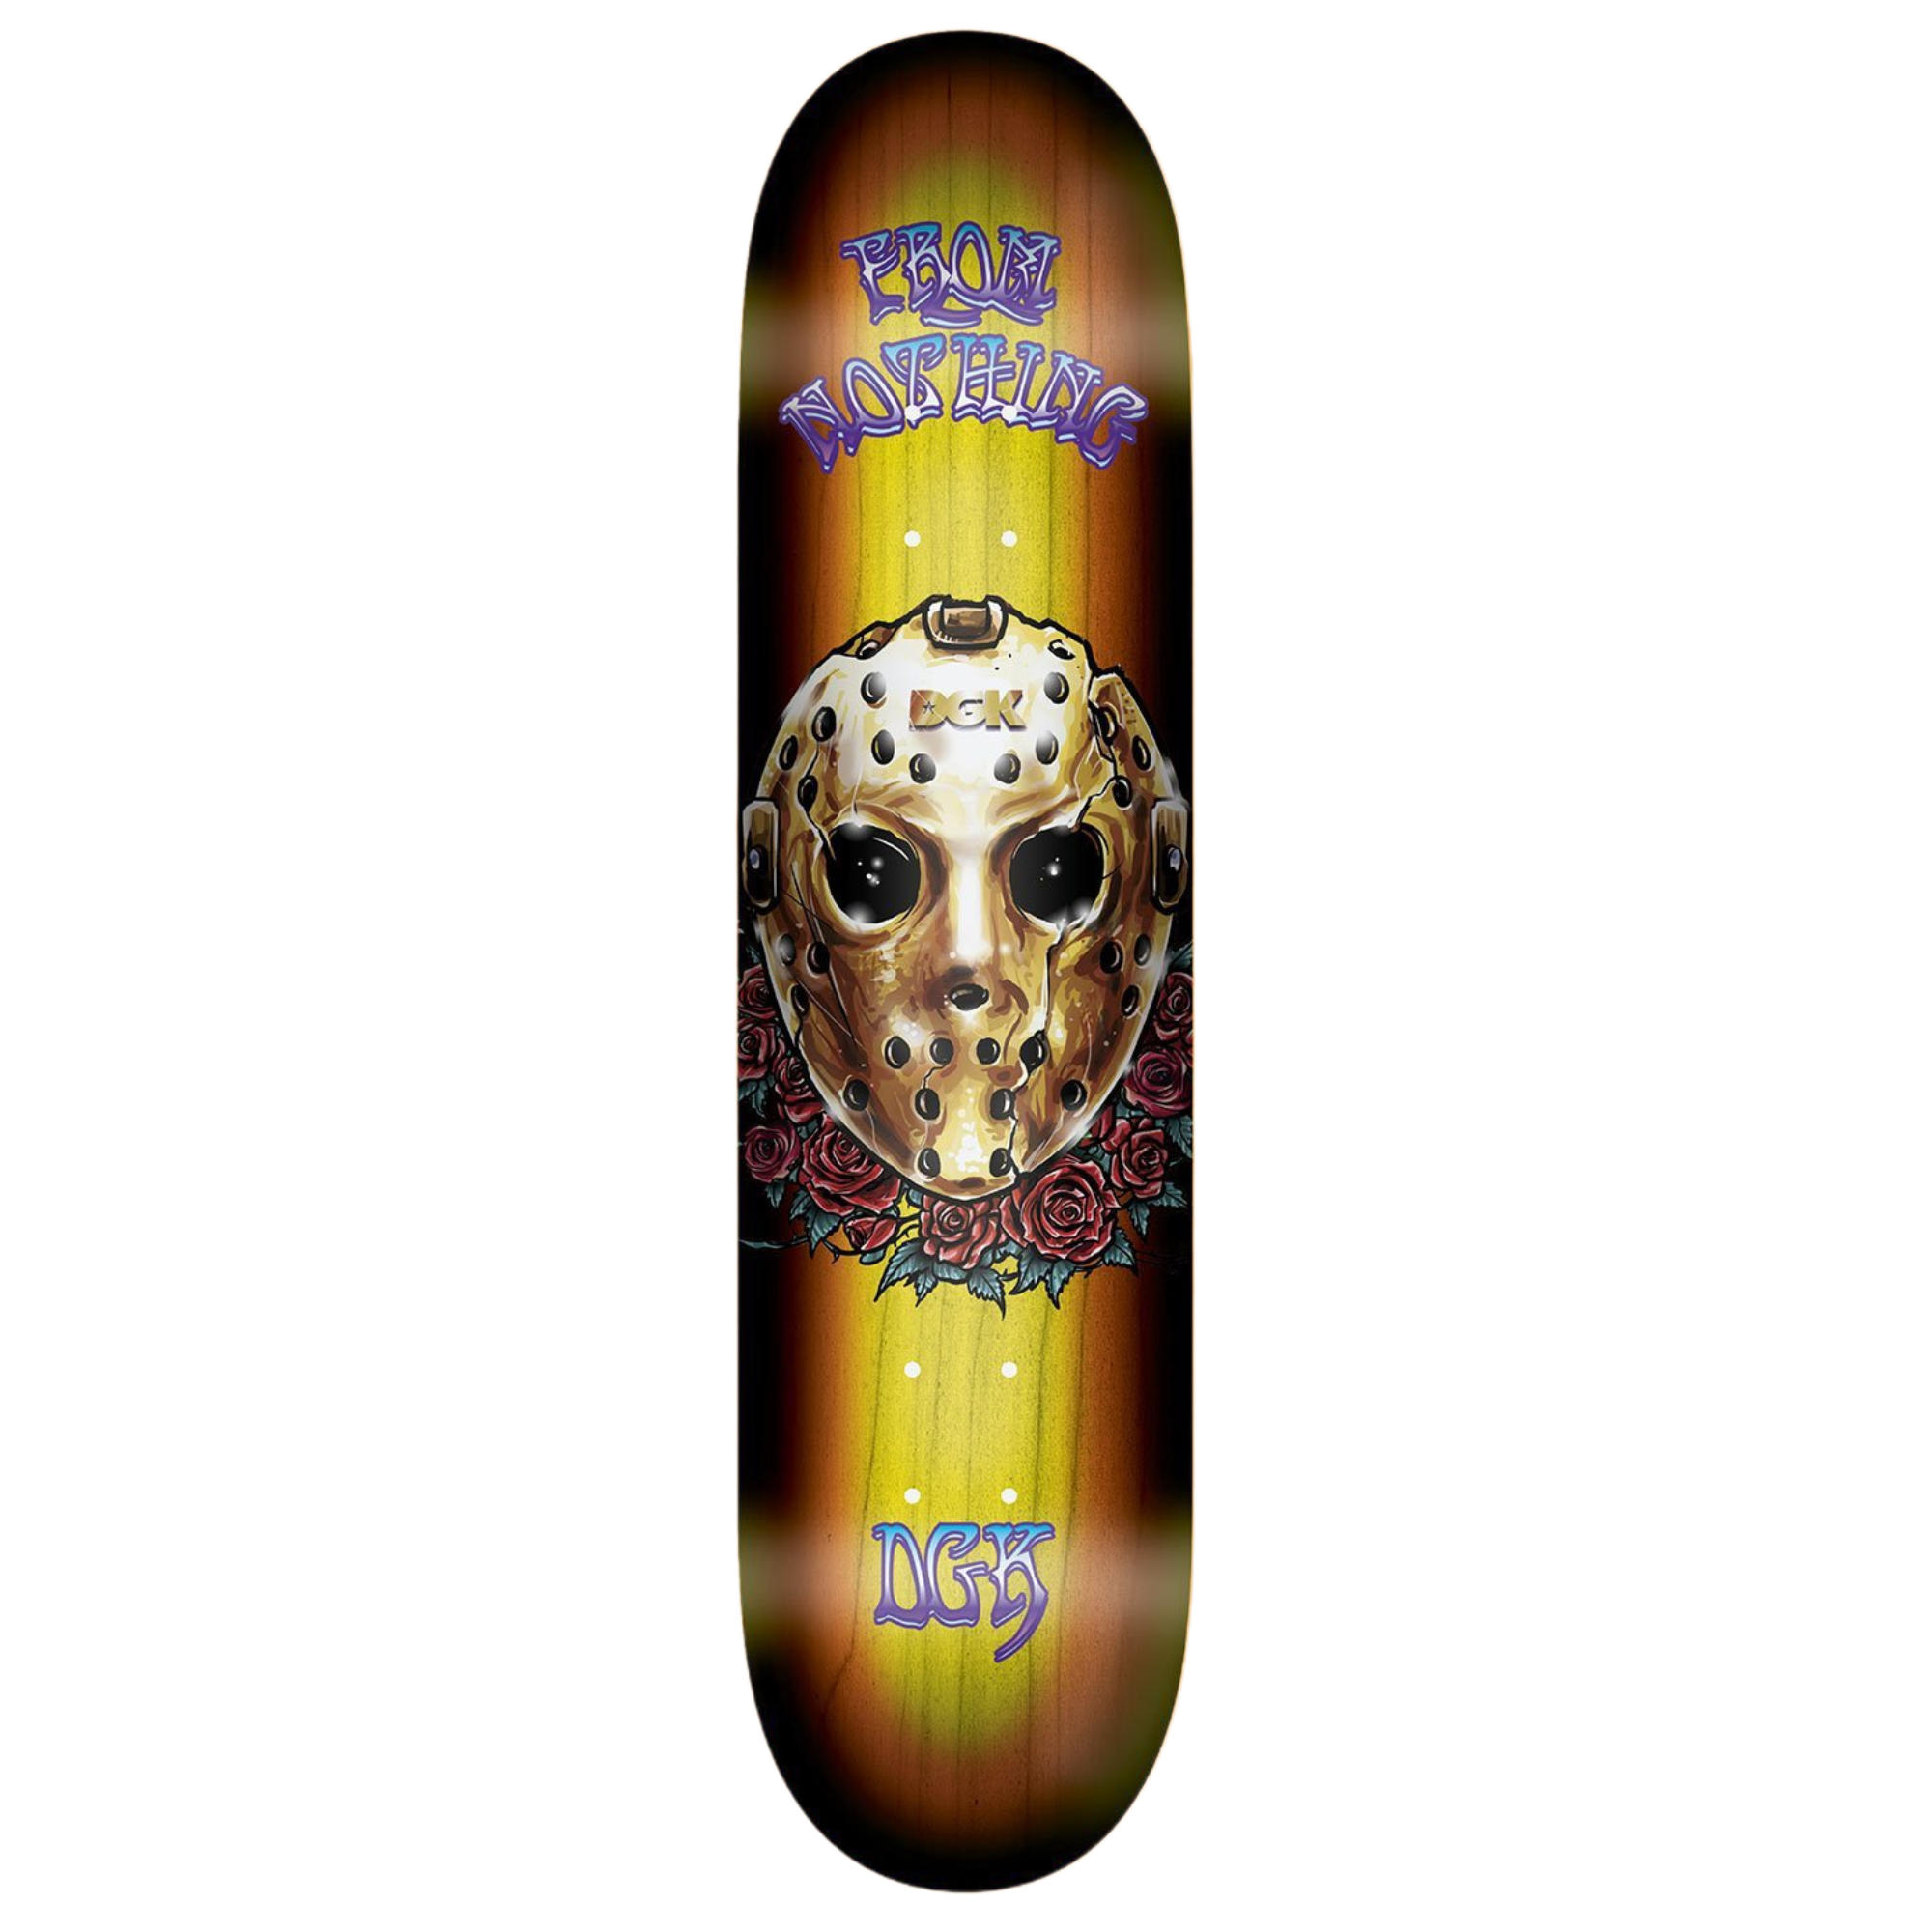 Dgk - Skateboard - Deck - Sunburst (Fade Veneer) 8.06" (Multi) Deck